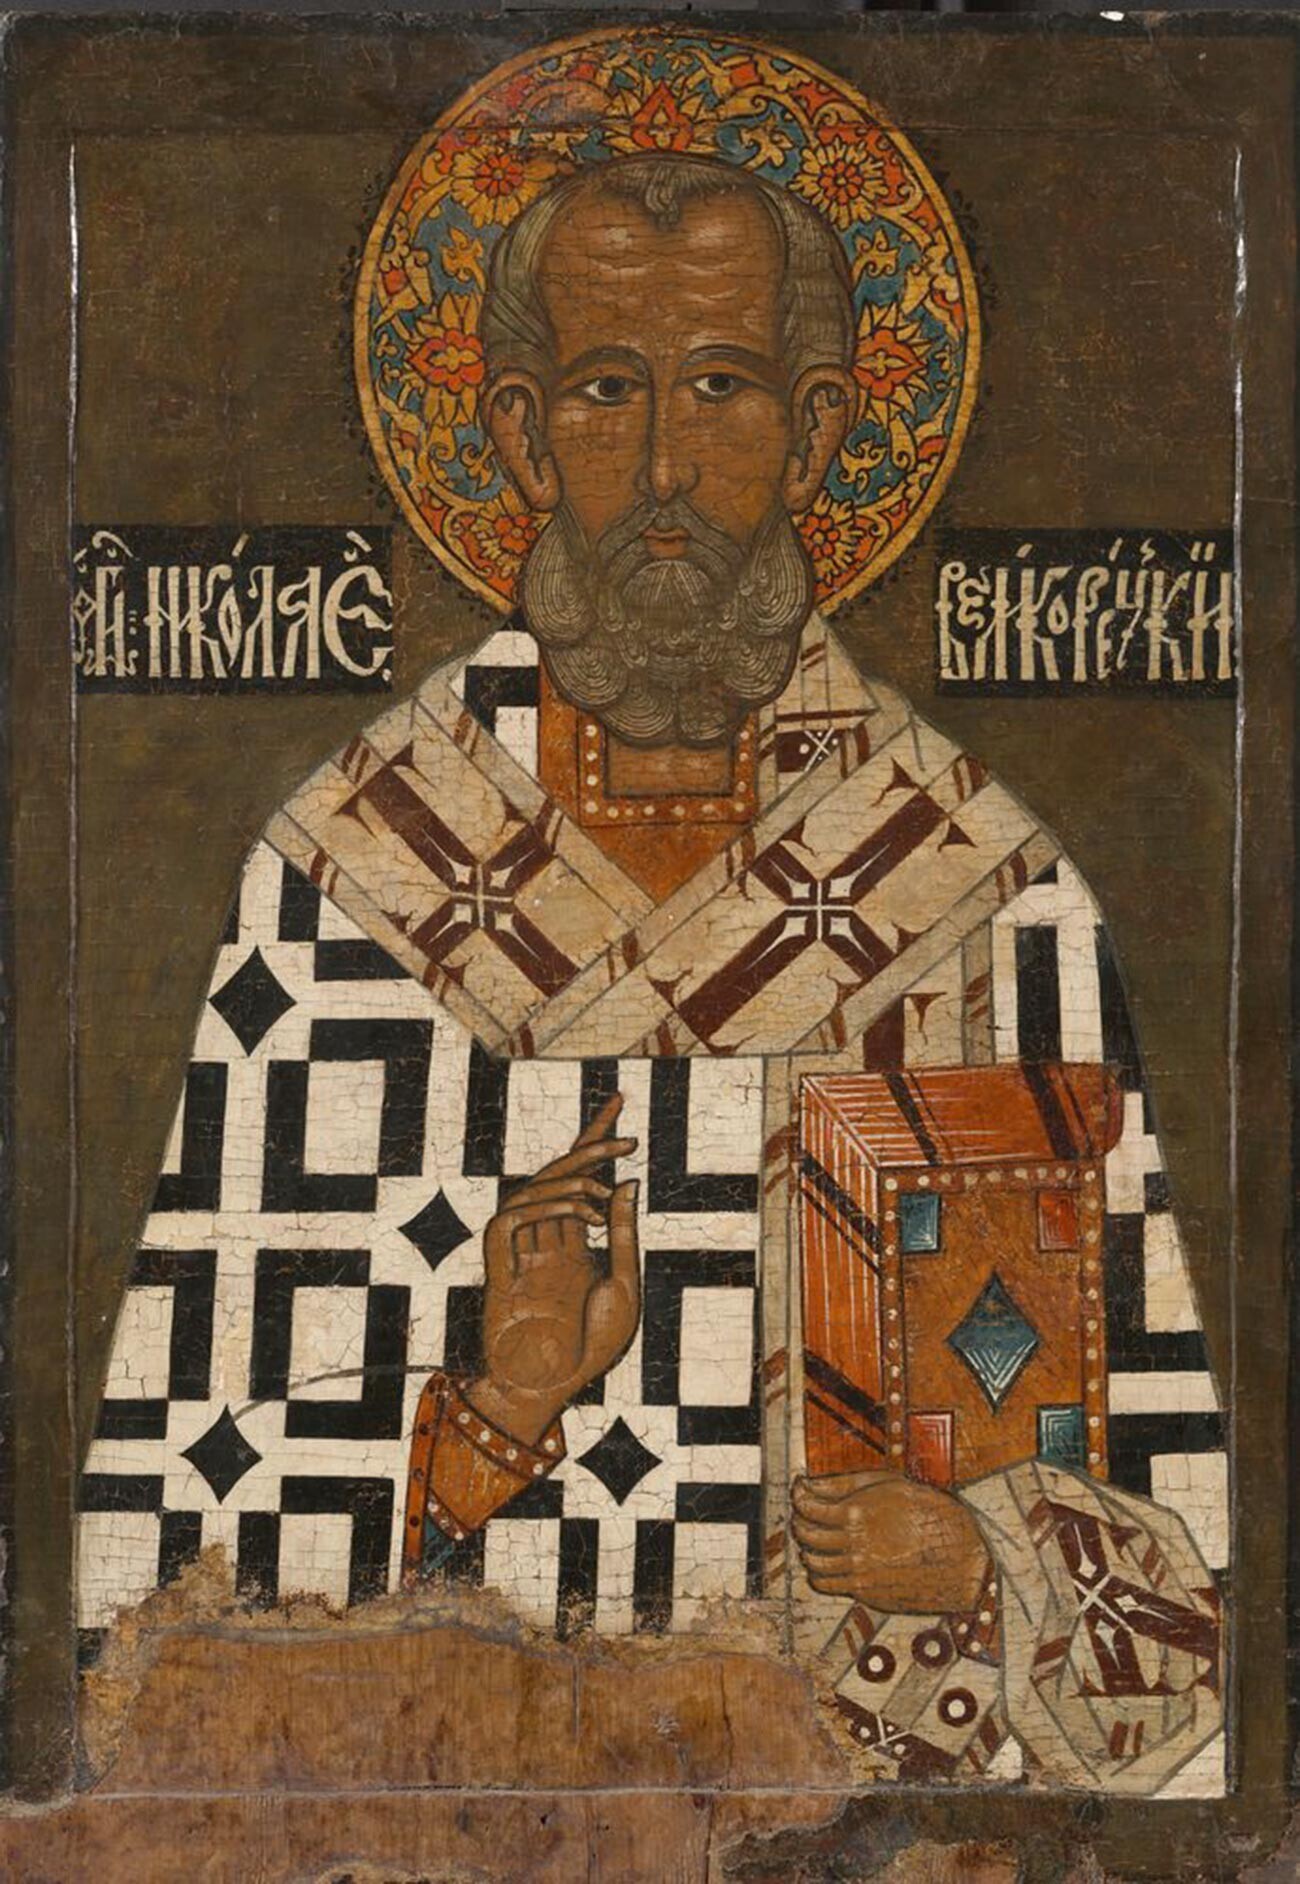 Свети Николај Чудотворец (Никола Великорецки). Крај на XVI век, Вологда (Третјаковска галерија)

